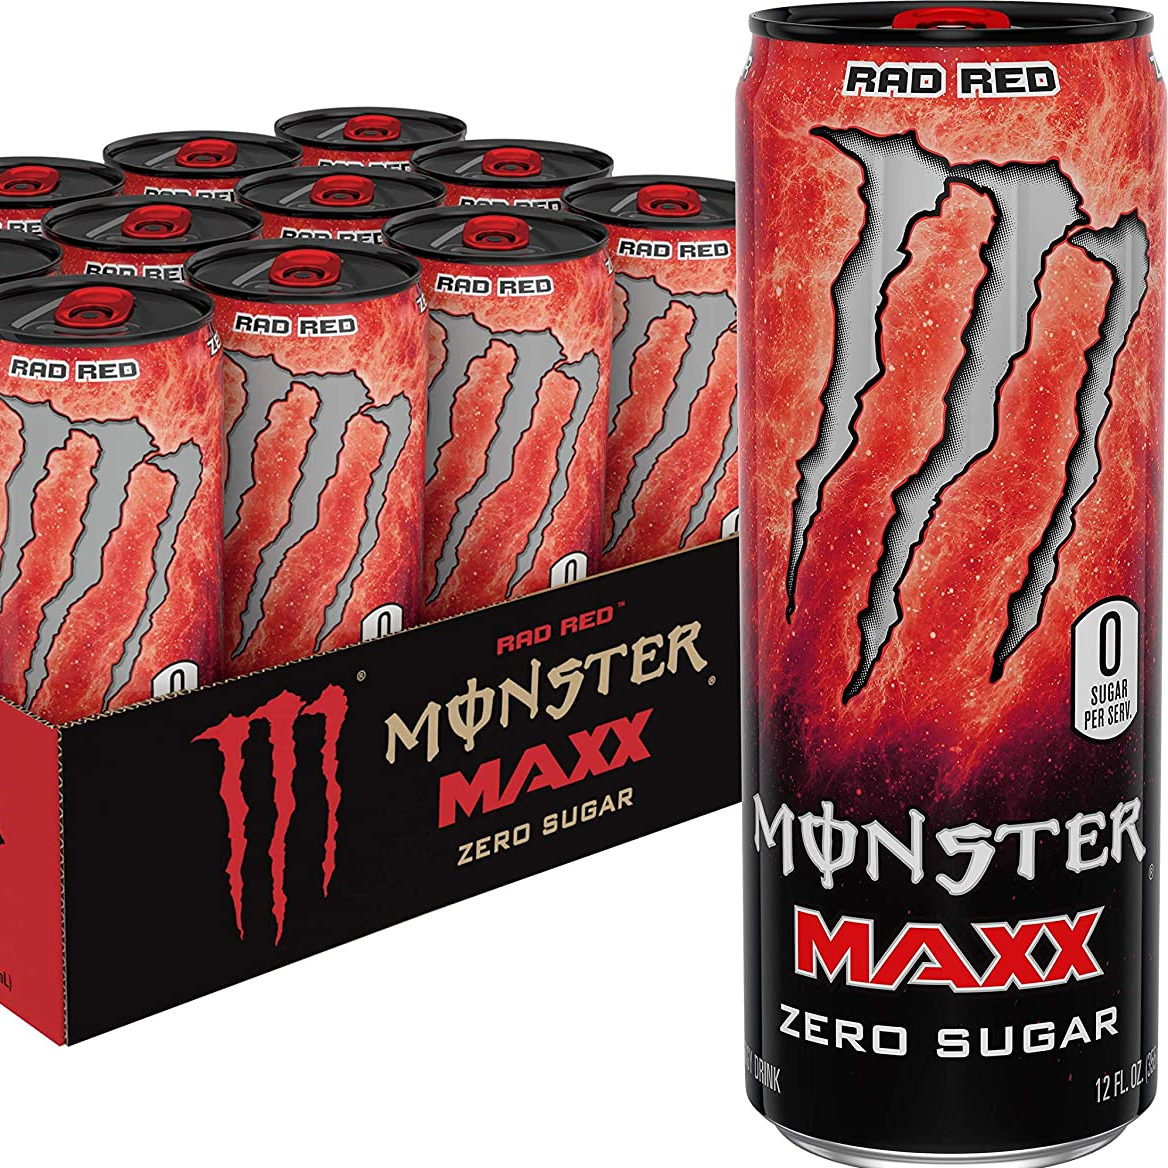 Bemærk skelet dominere Monster Maxx Rad Red - sugarveto.com